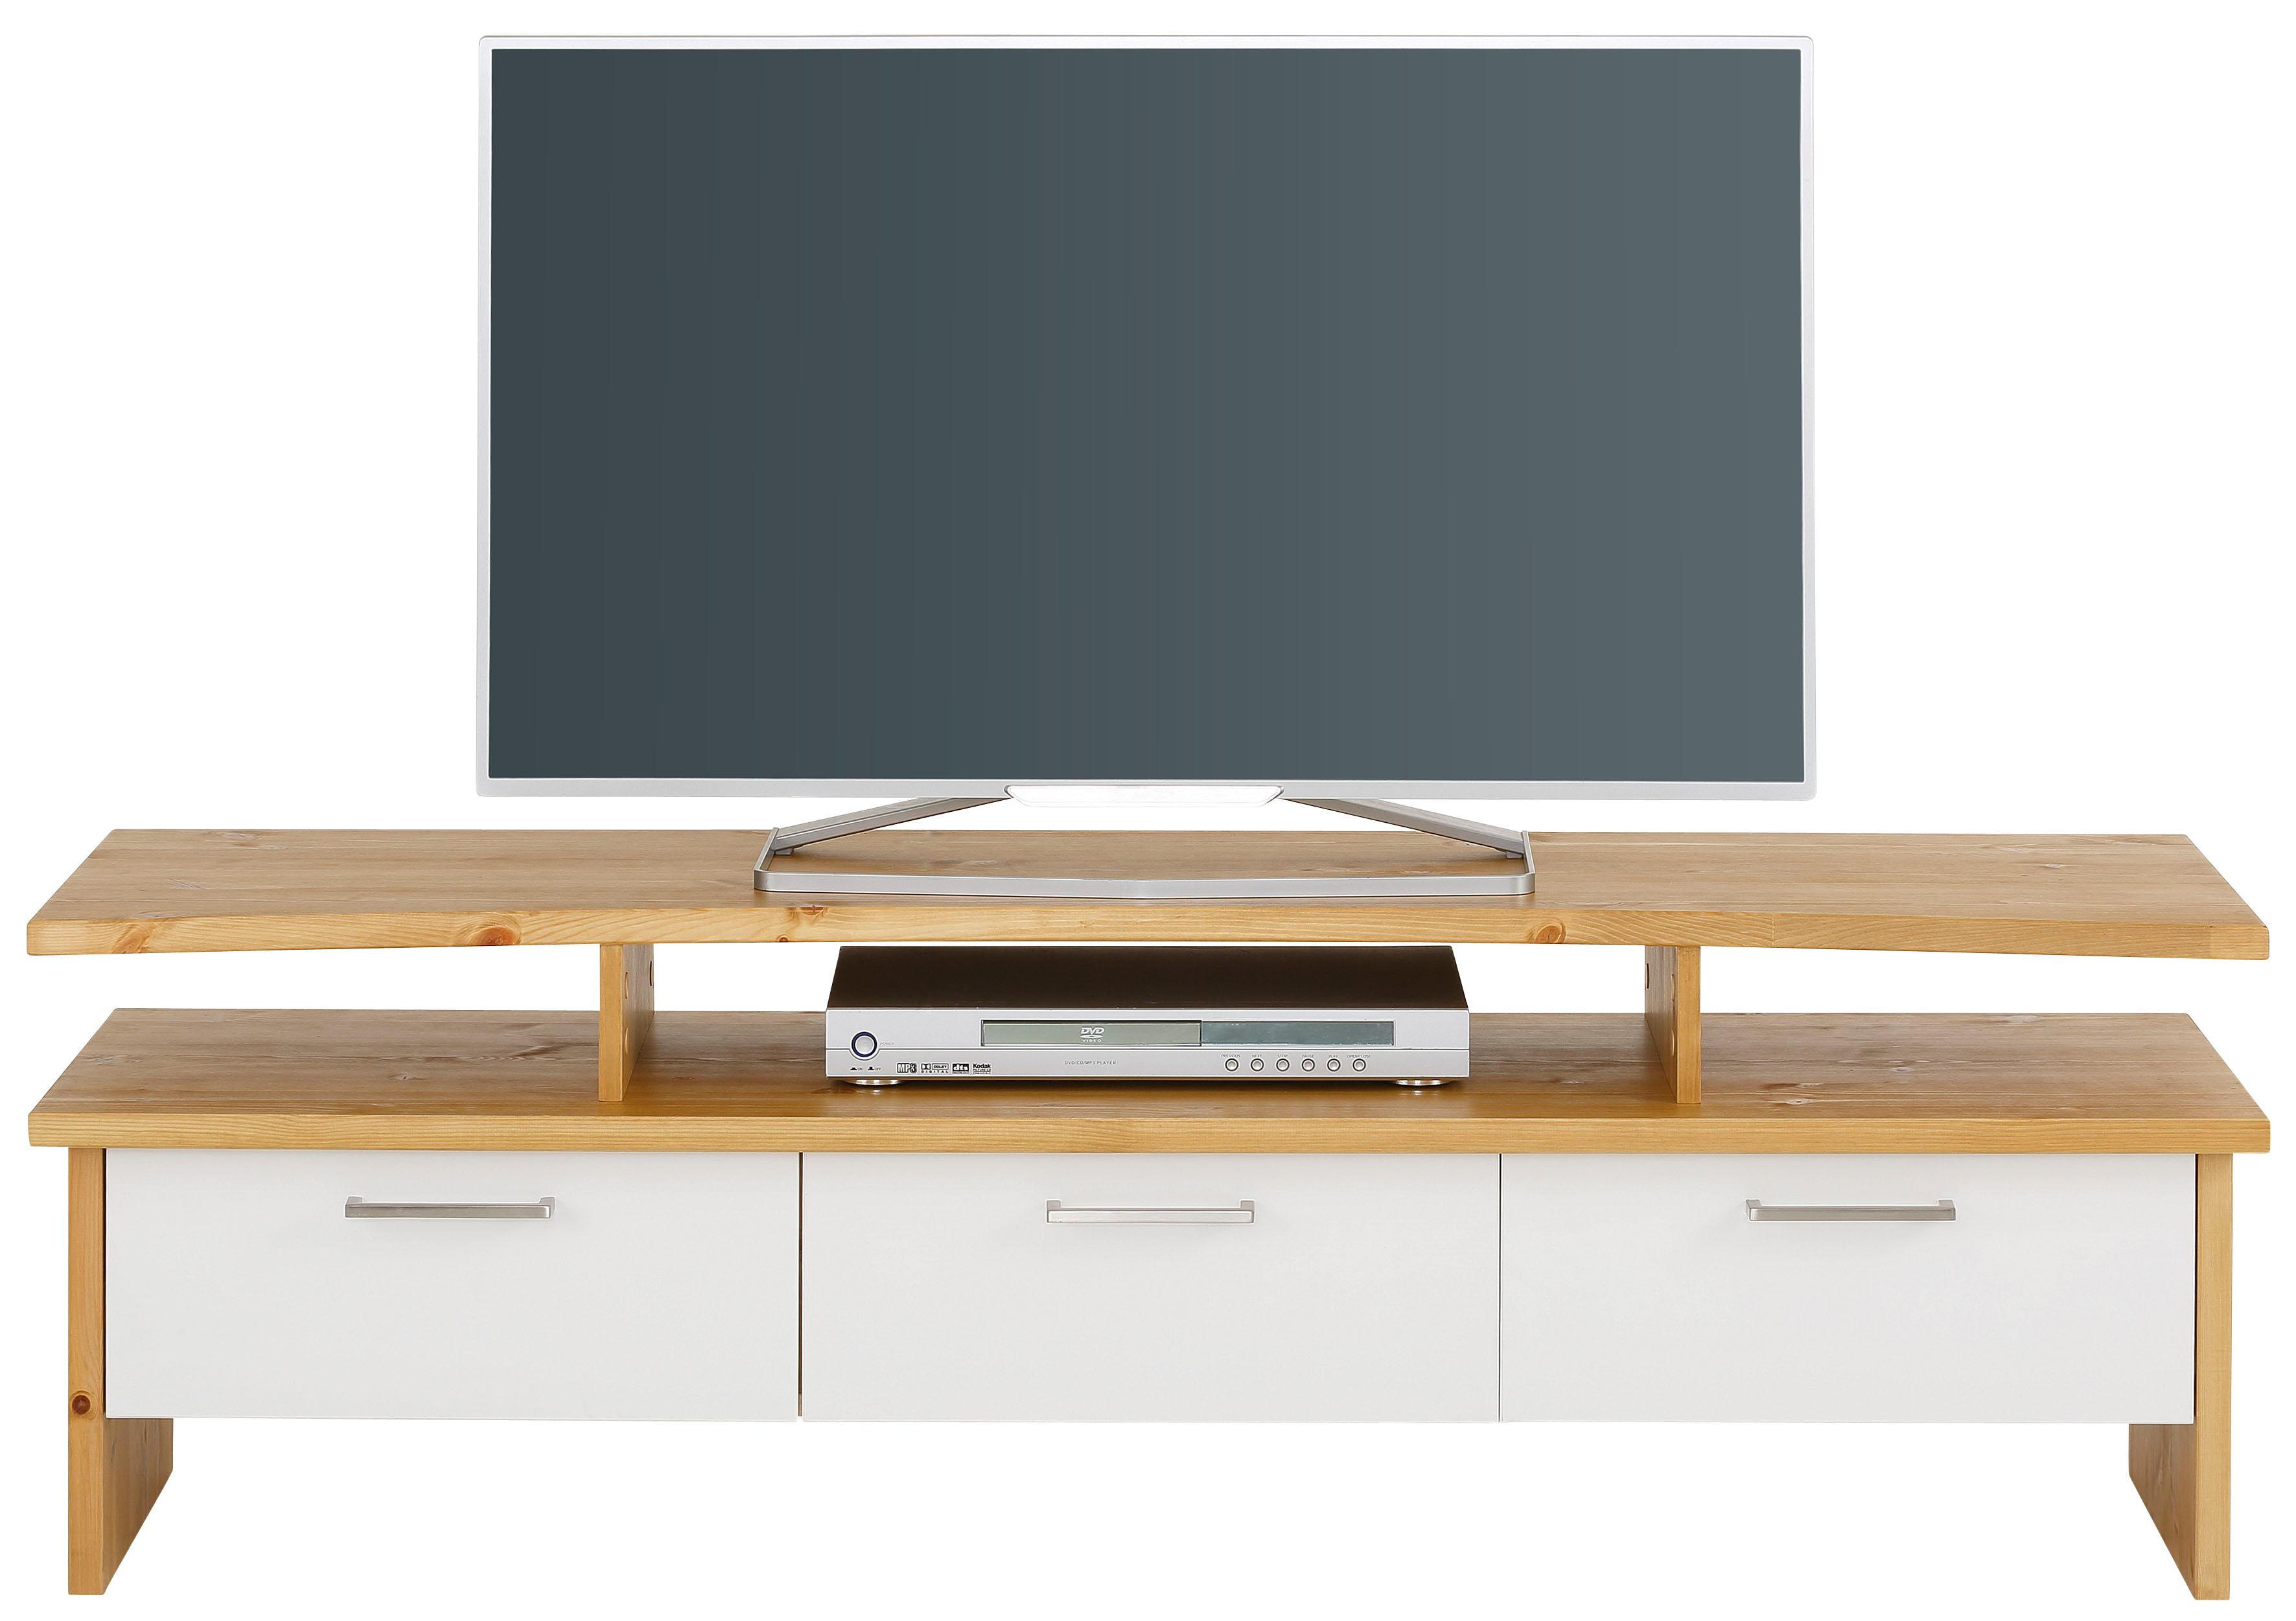 Home affaire TV-Board Ixo, Breite 148 cm